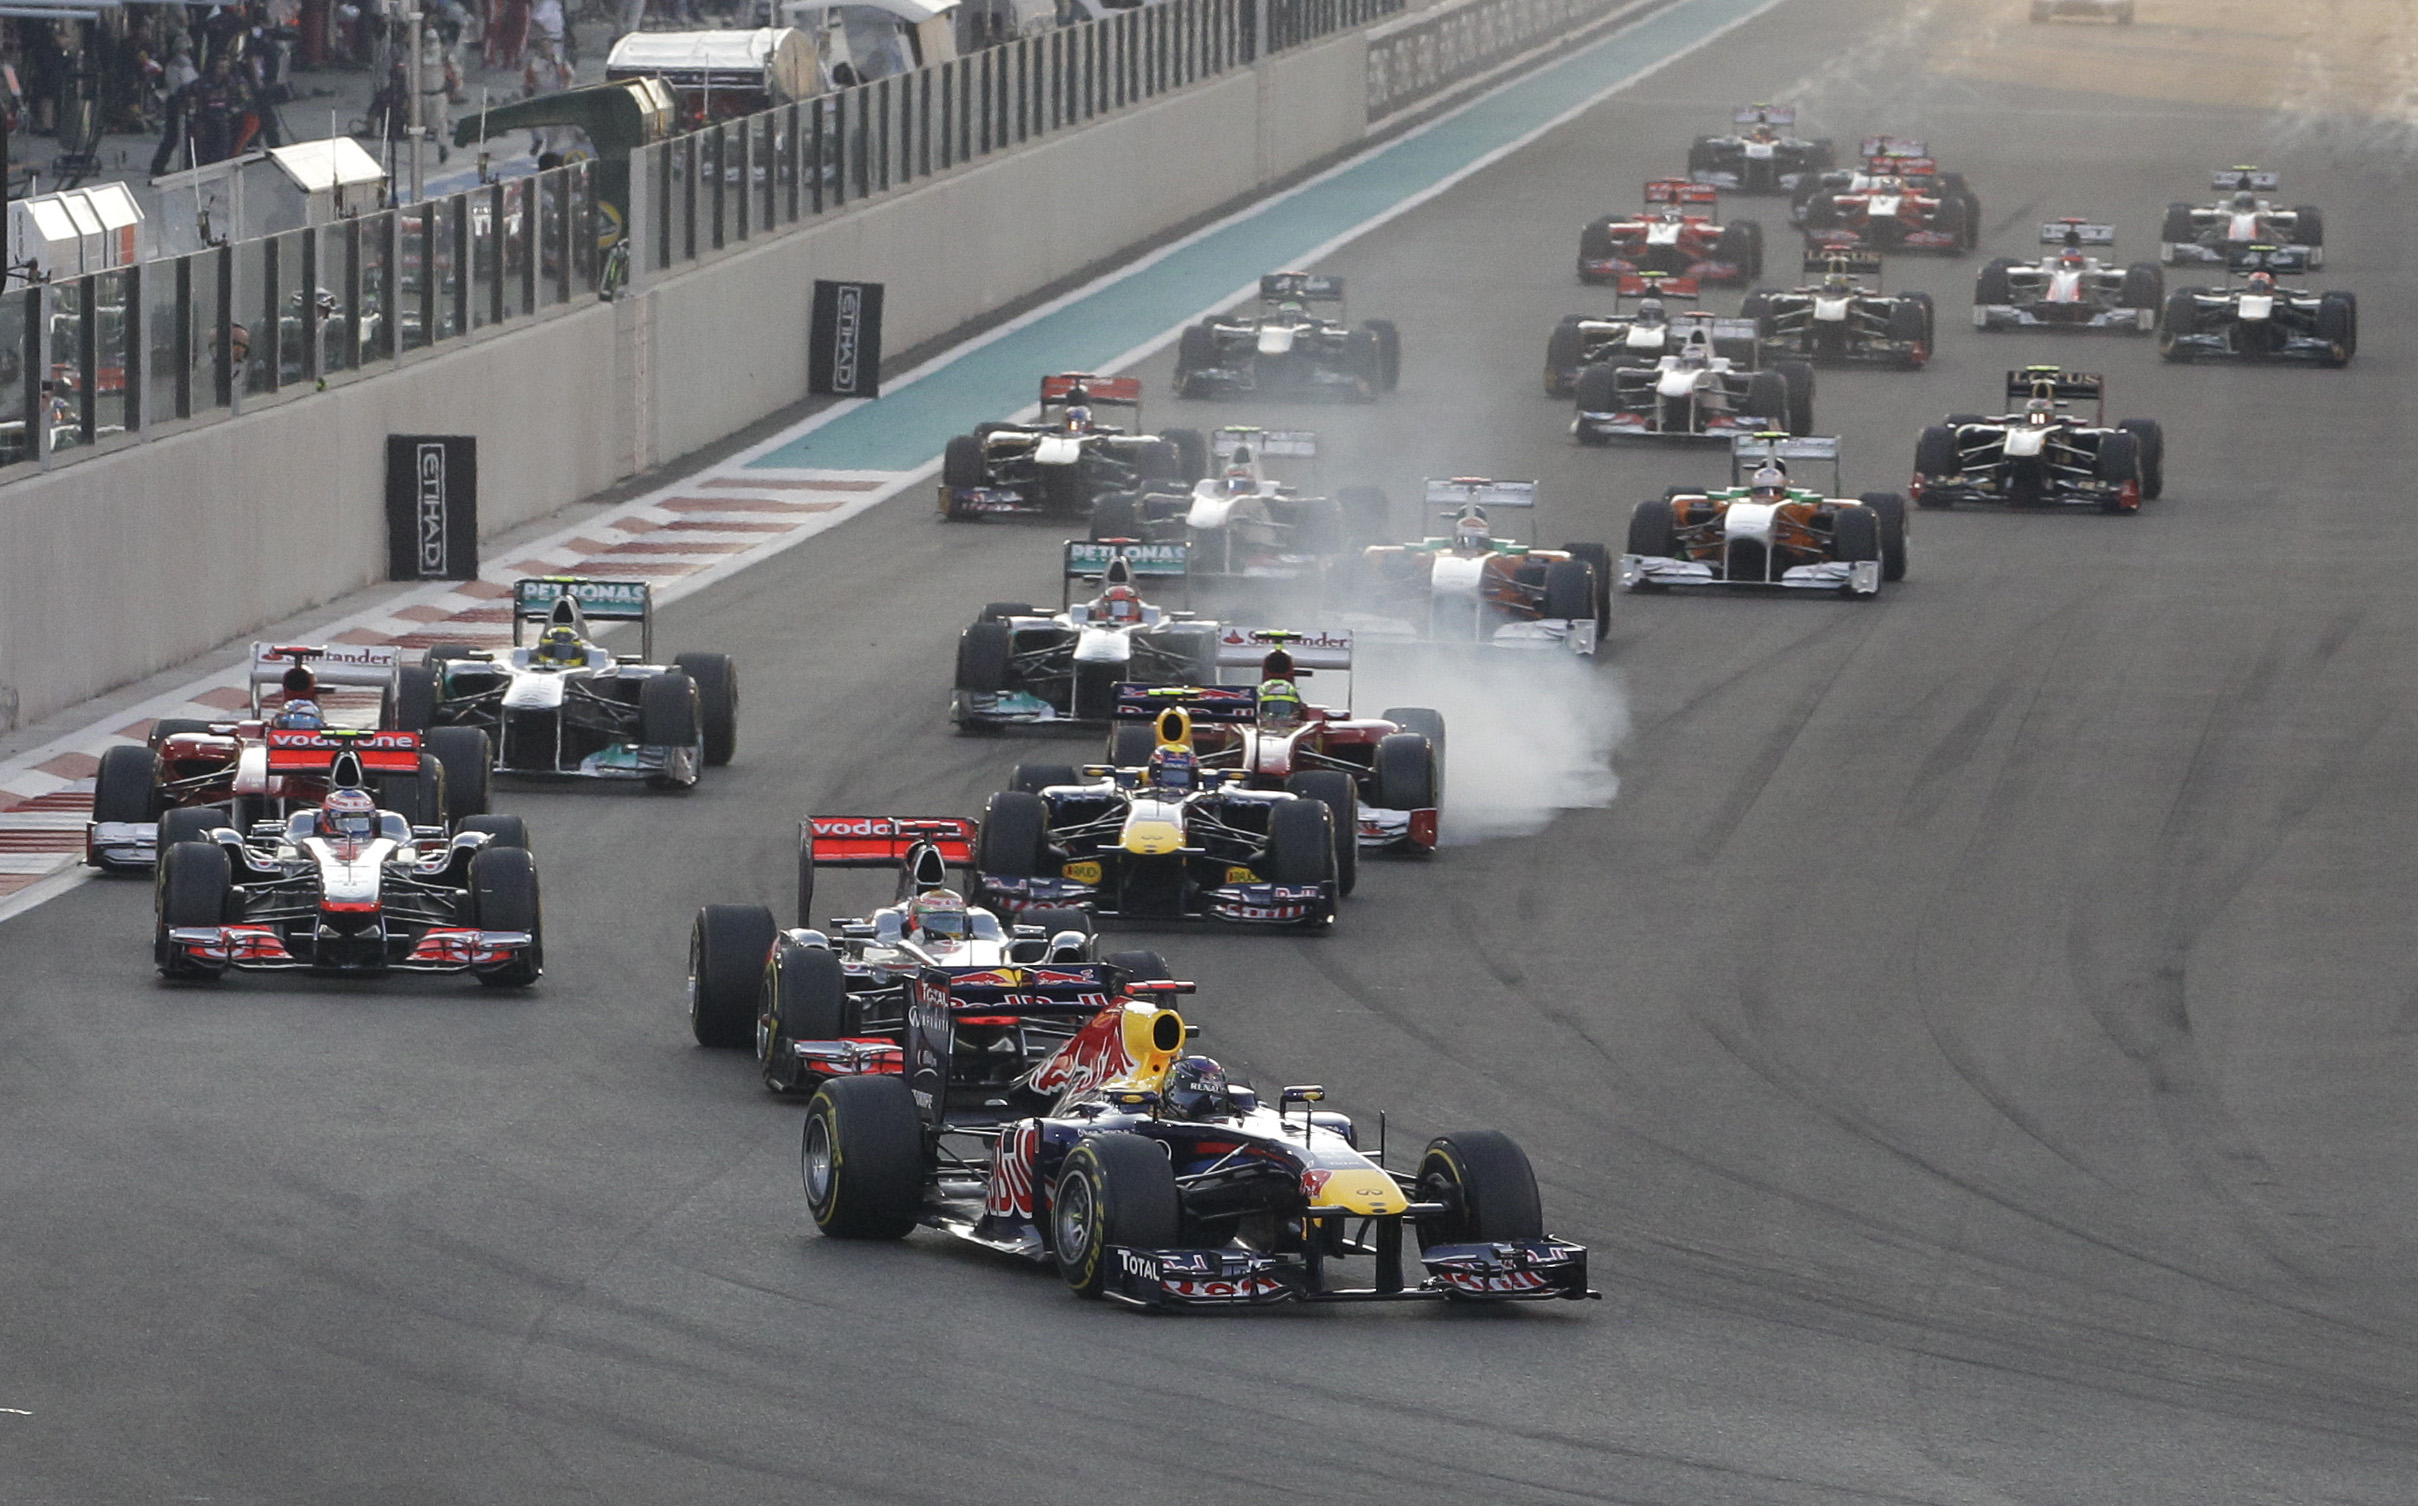 Mark Webber, Abu Dhabi, Formel 1, Nigel Mansell, Sebastian Vettel, Red Bull, Lewis Hamilton, Jenson Button, Fernando Alonso